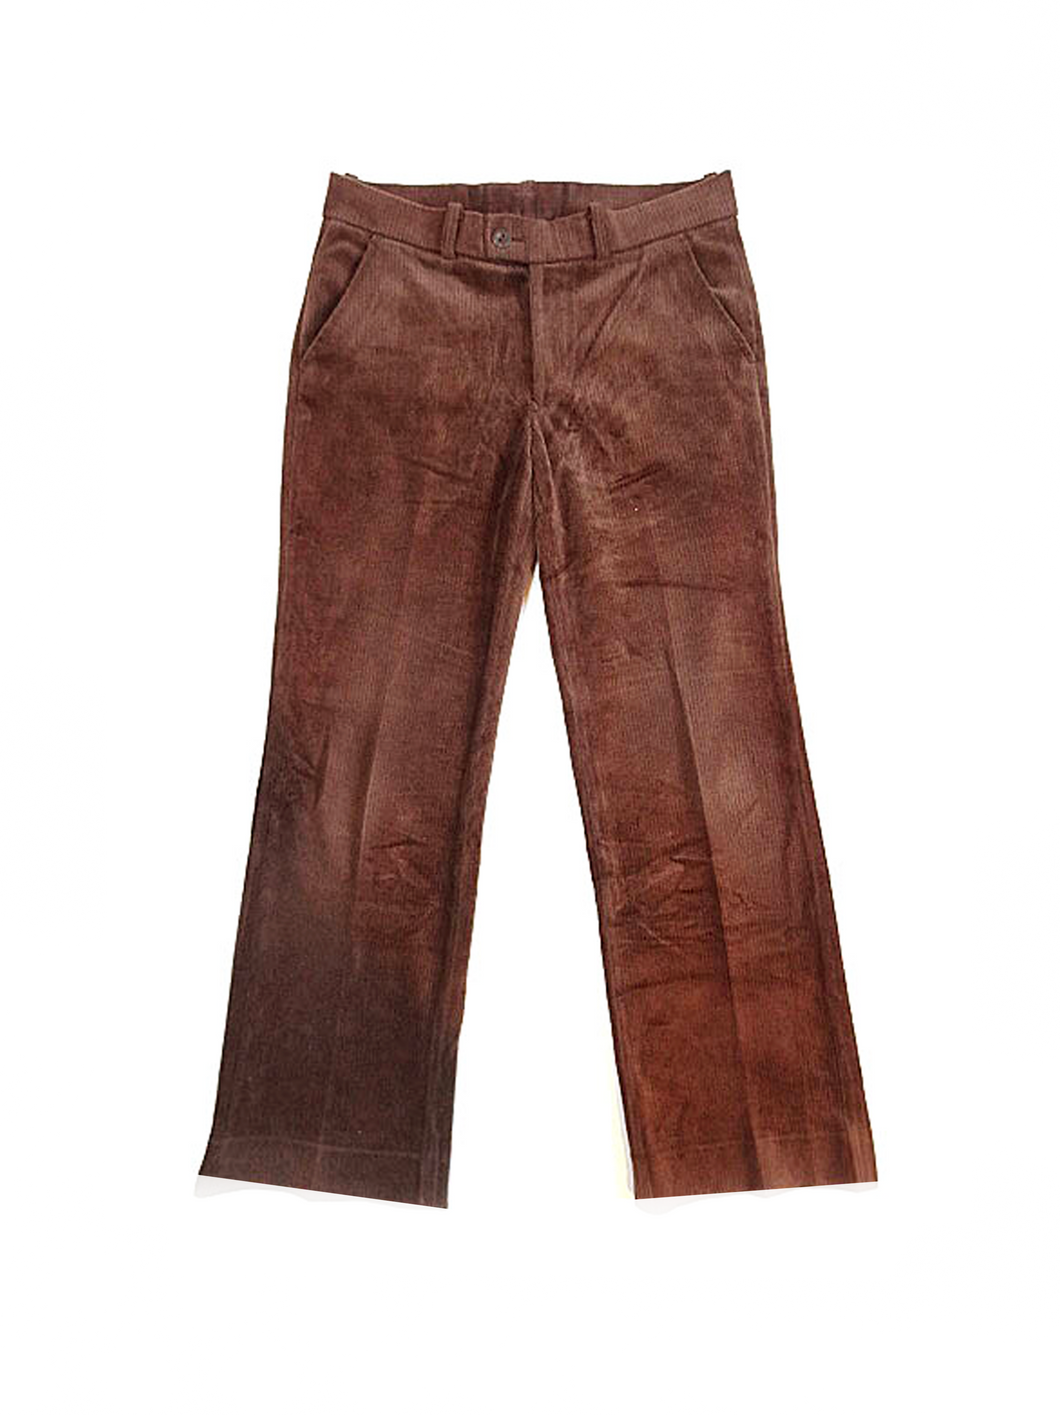 Adidas Rare Brown Vintage 1980s Corduroy Pants